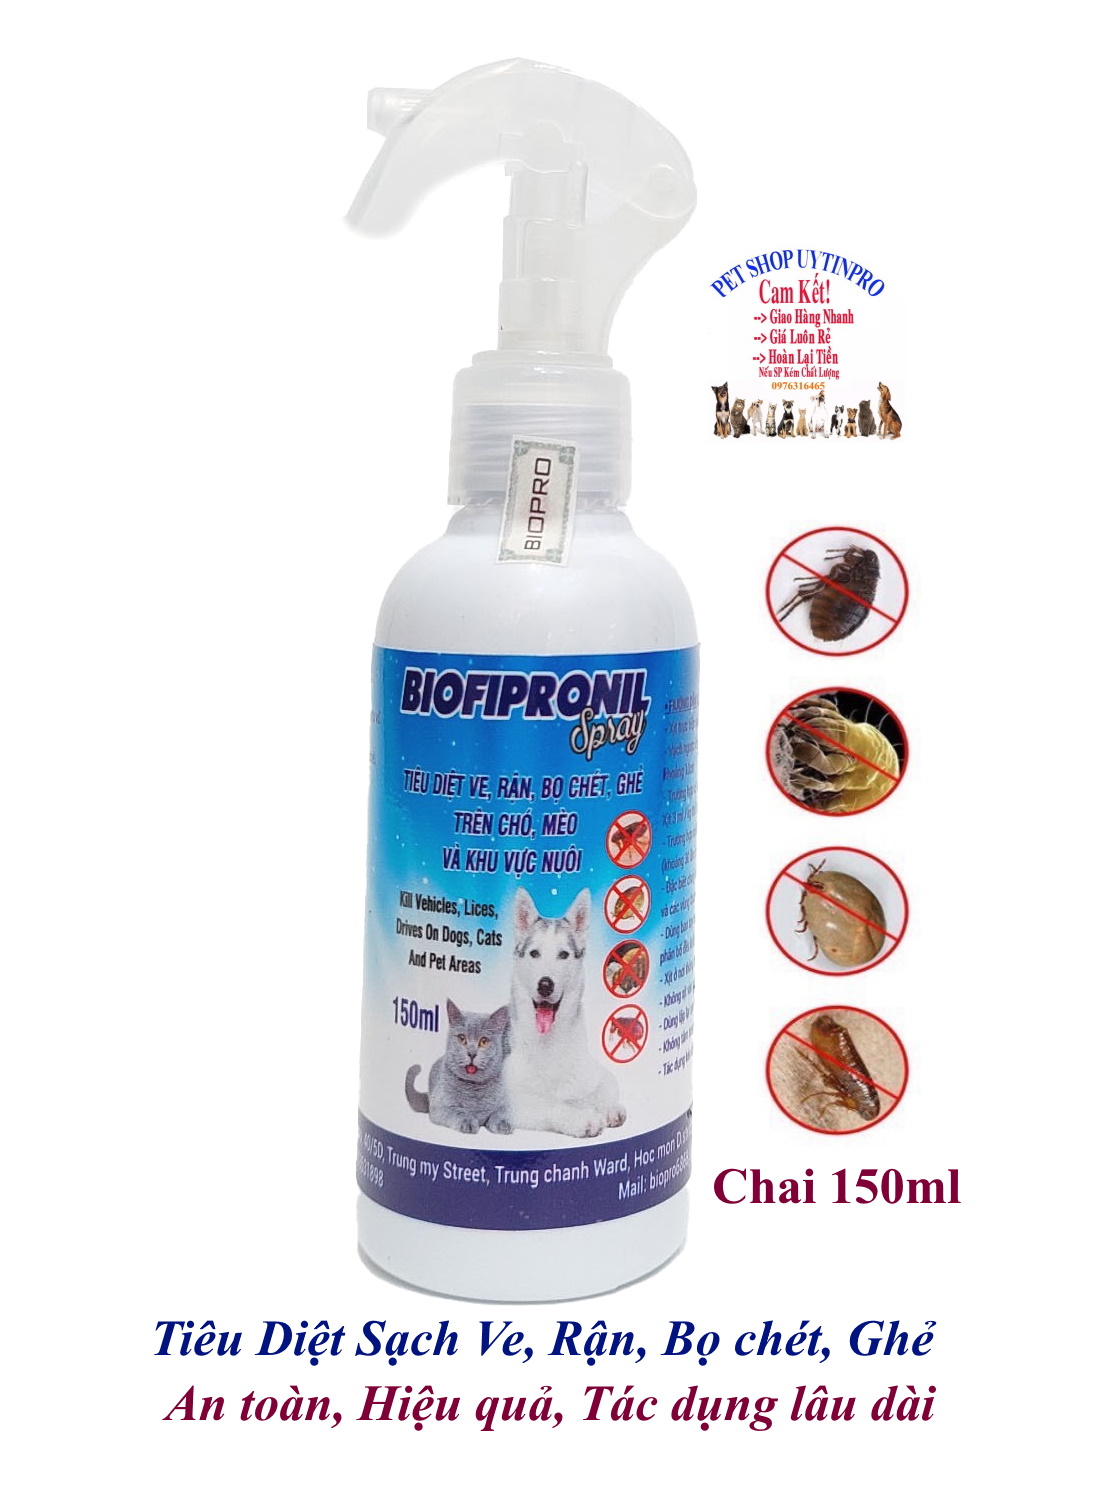 Chai xịt tiêu diệt sạch ve rận bọ chét ghẻ cho Chó, Mèo BioFipronil chai 150ml An toàn, Hiệu quả, Tác dụng lâu dài